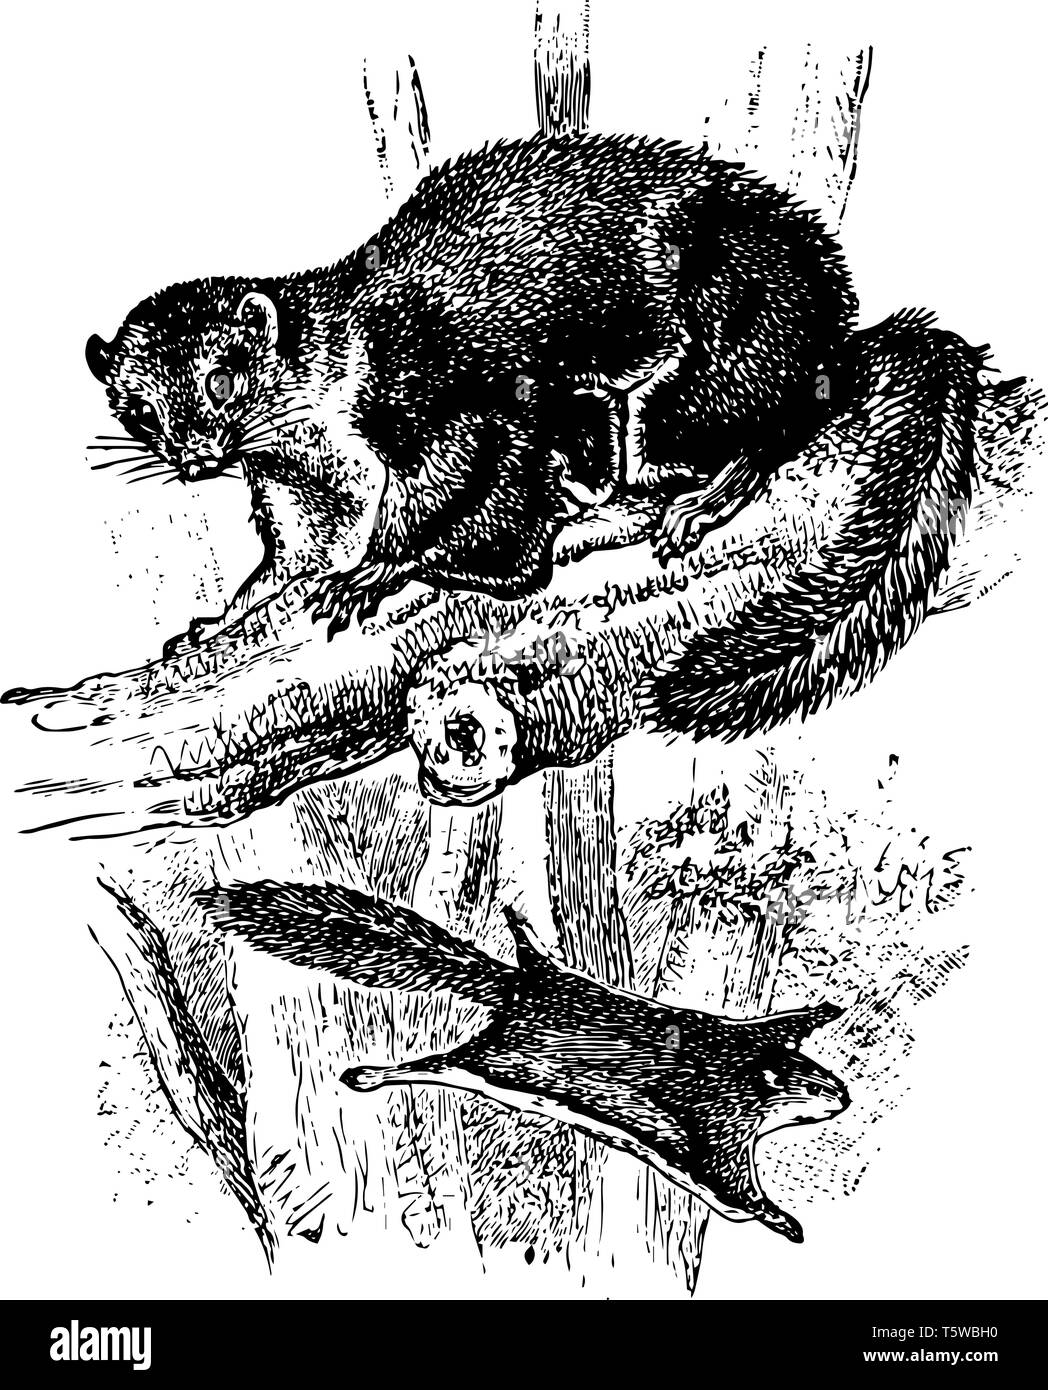 Smoky scoiattolo battenti è una specie di roditore nella famiglia scoiattolo vintage disegno della linea di incisione o illustrazione. Illustrazione Vettoriale